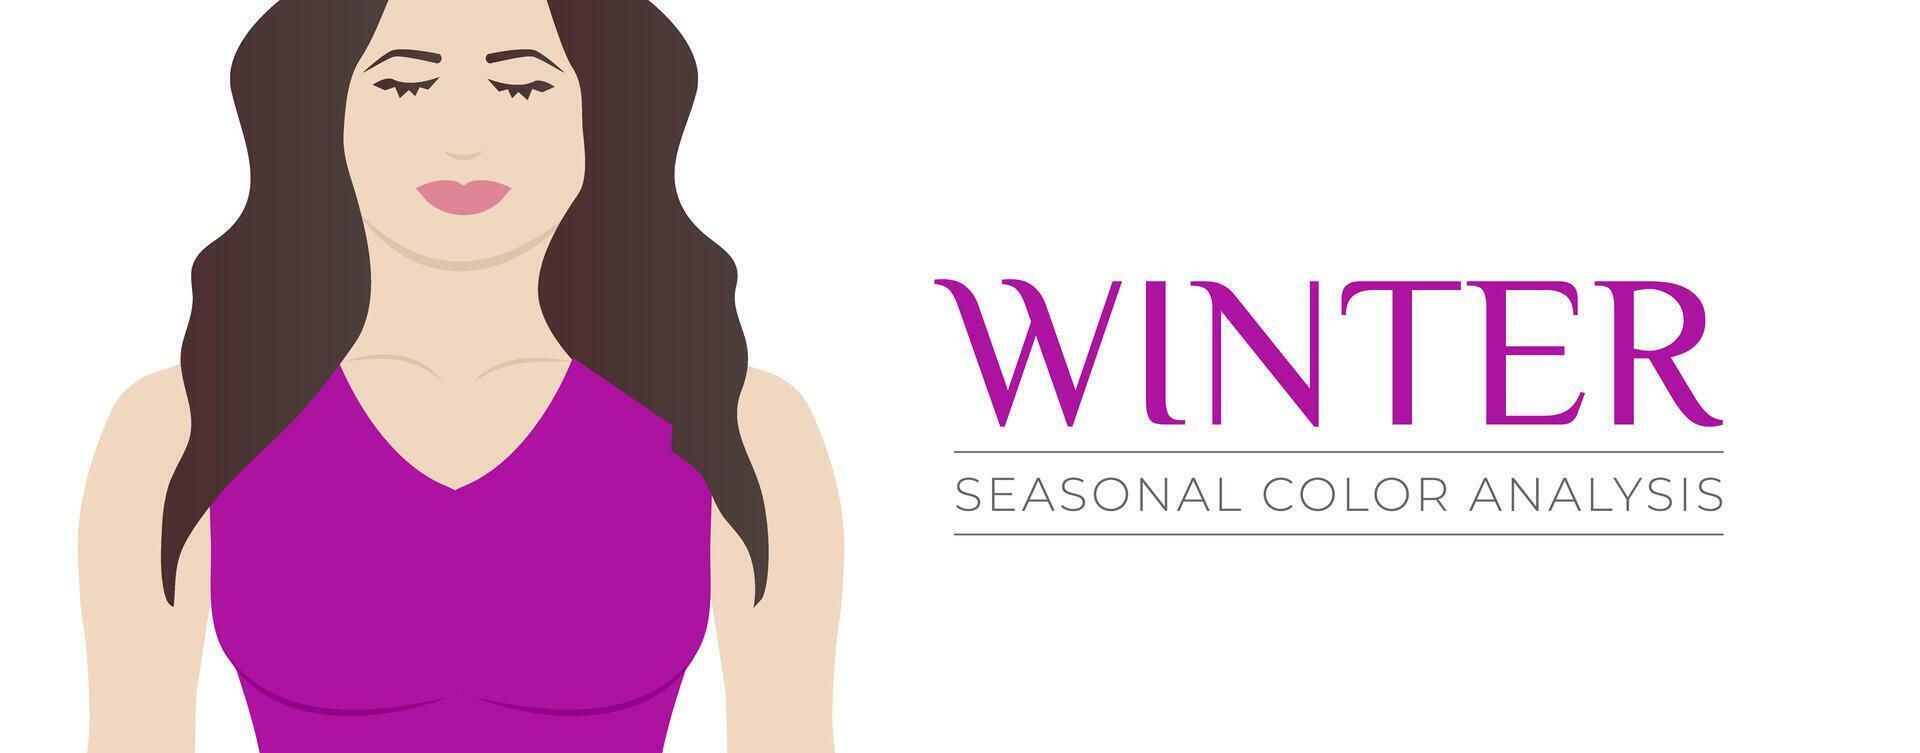 säsong- Färg analys vinter- baner bakgrund med kvinna illustration vektor